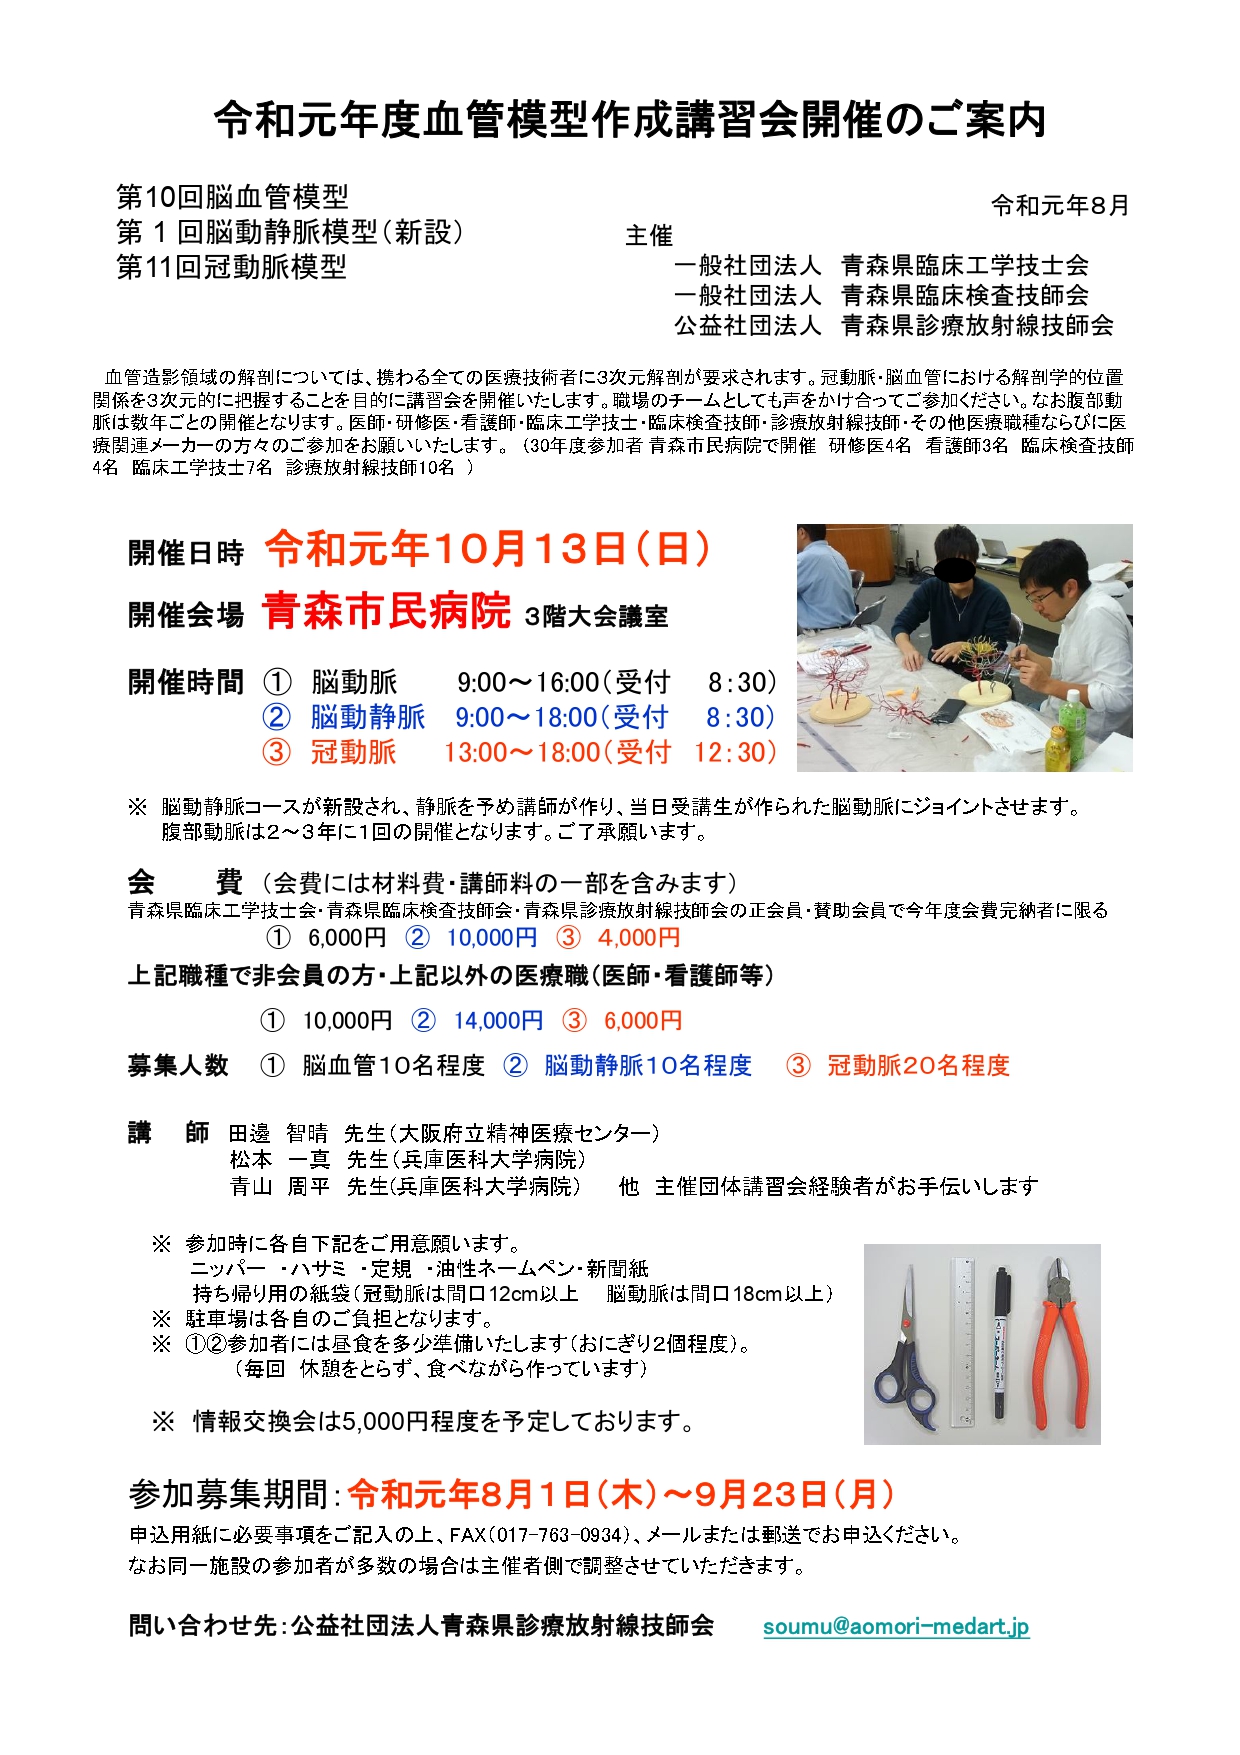 青森県開催 10月13日 令和元年度血管模型作成講習会開催のお知らせ 公益社団法人 宮城県放射線技師会